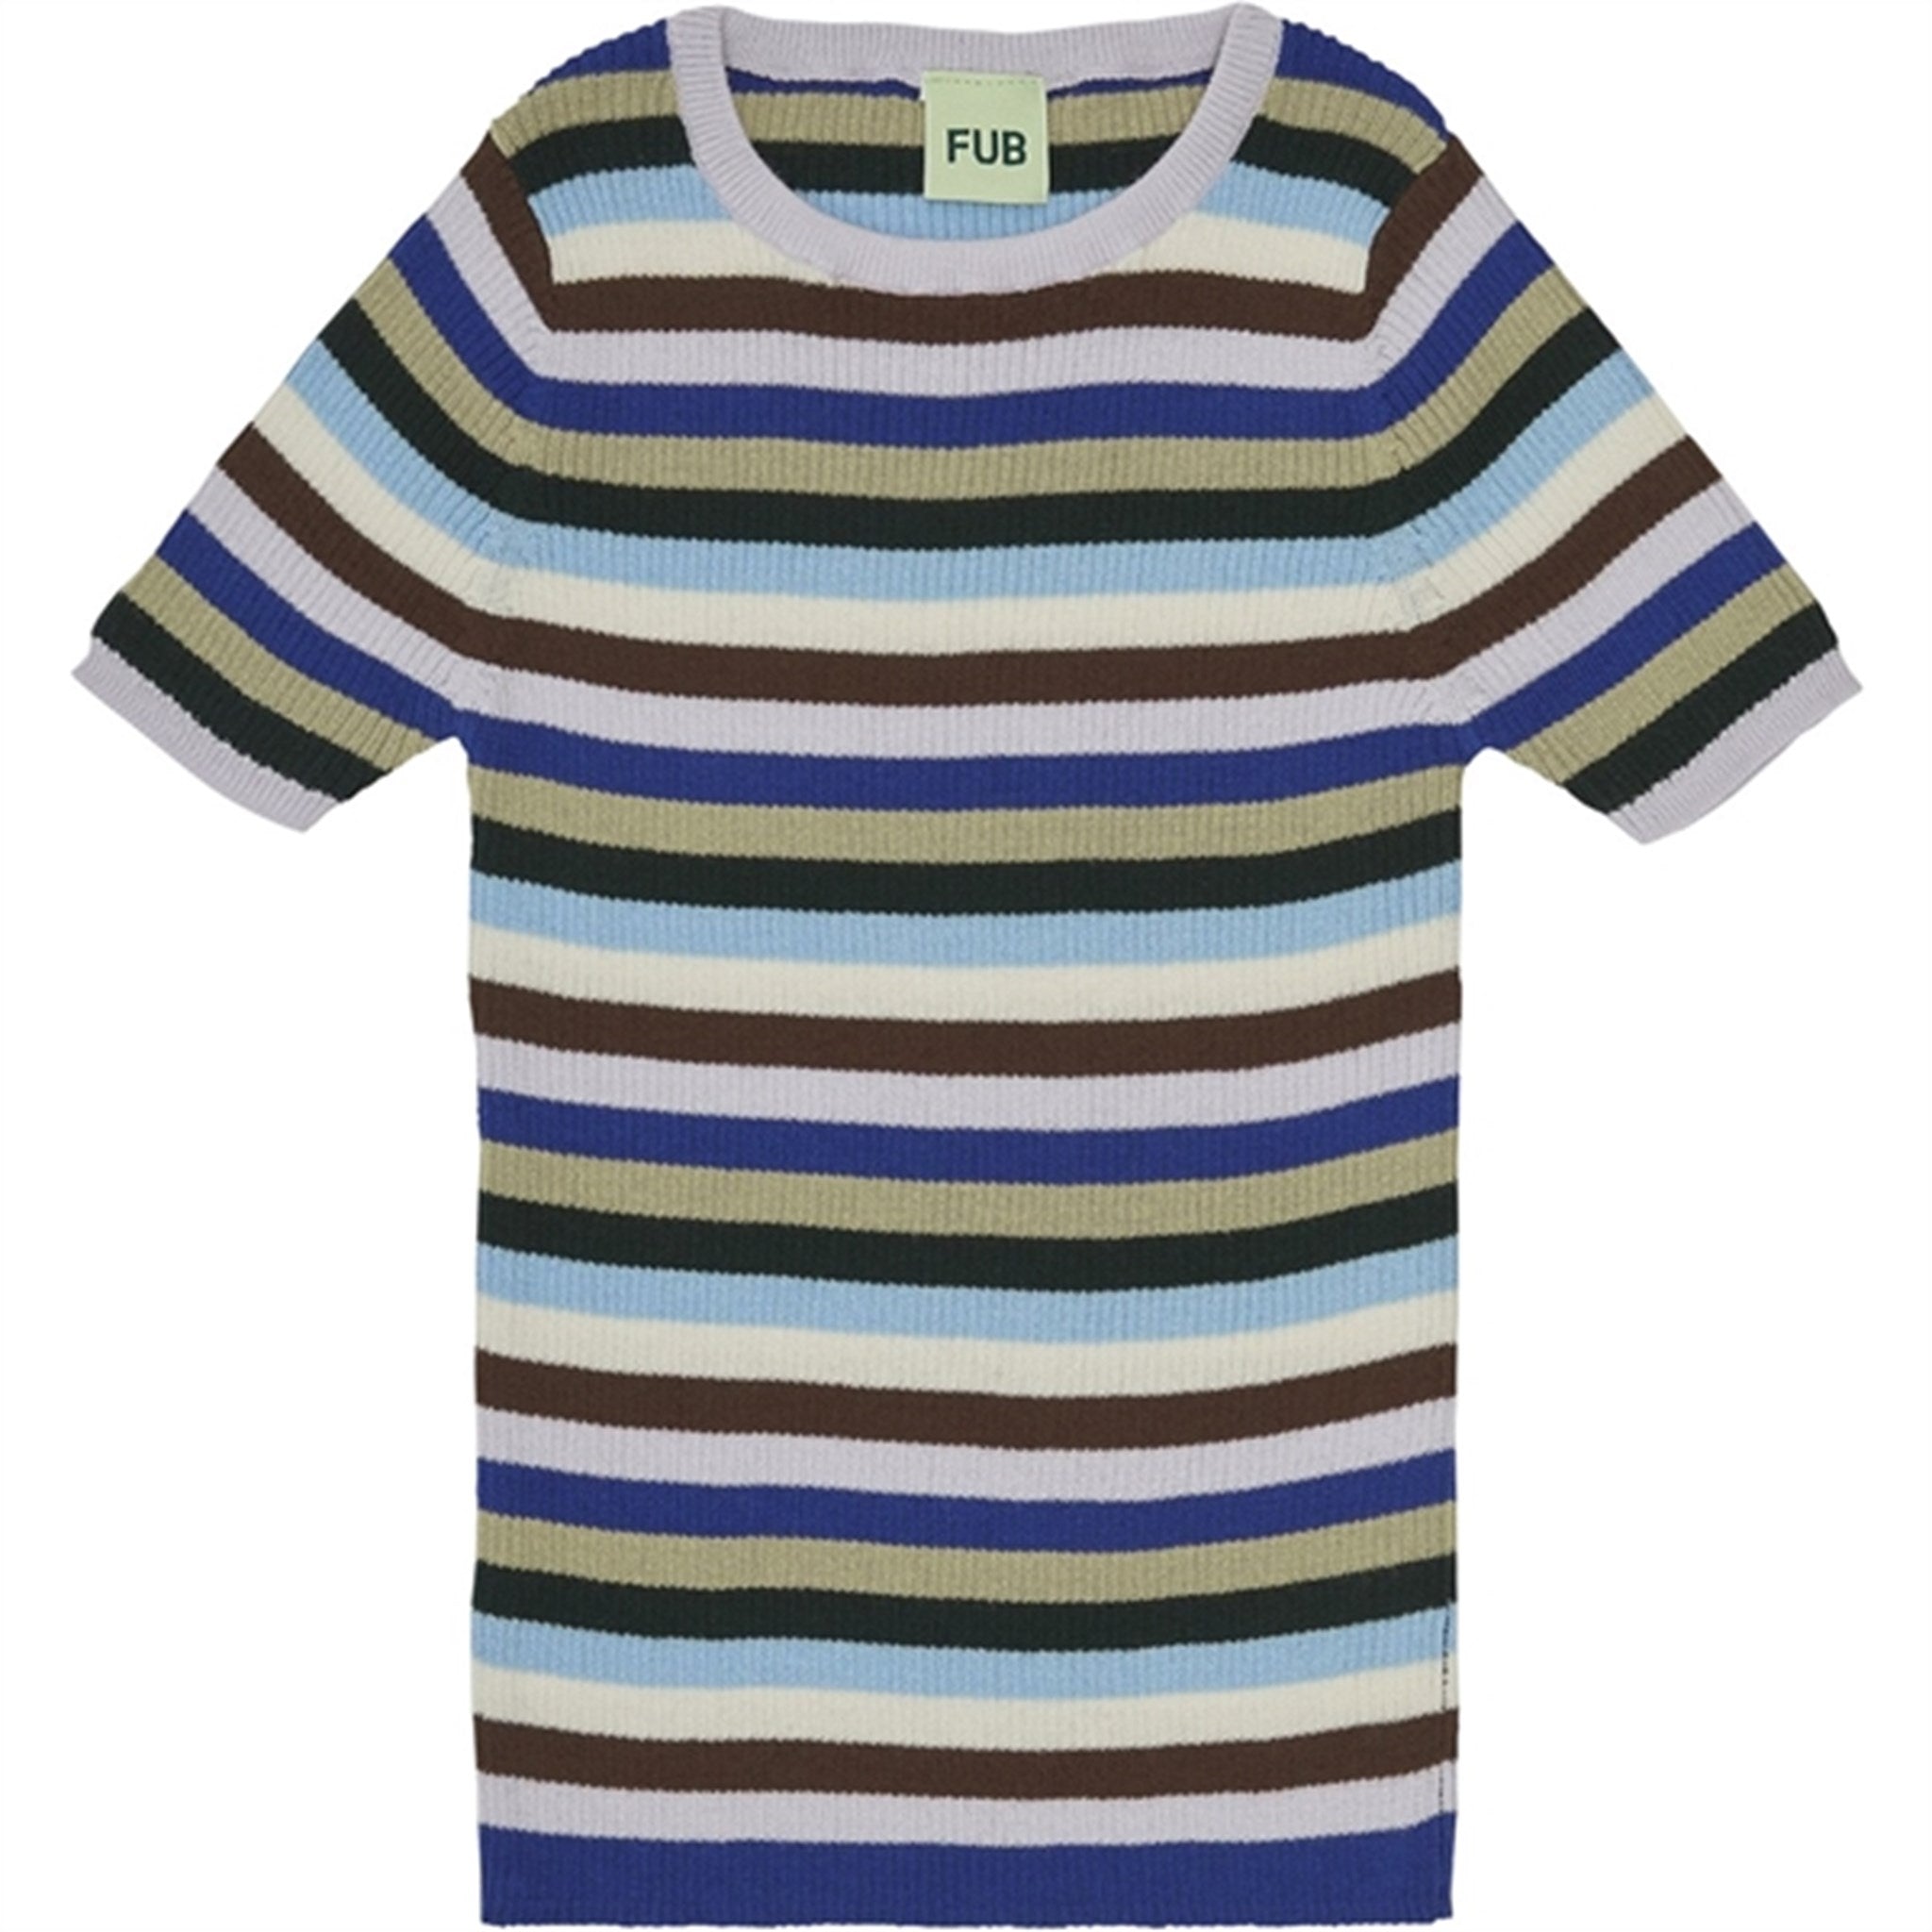 FUB Rib T-Shirt Multi Stripe